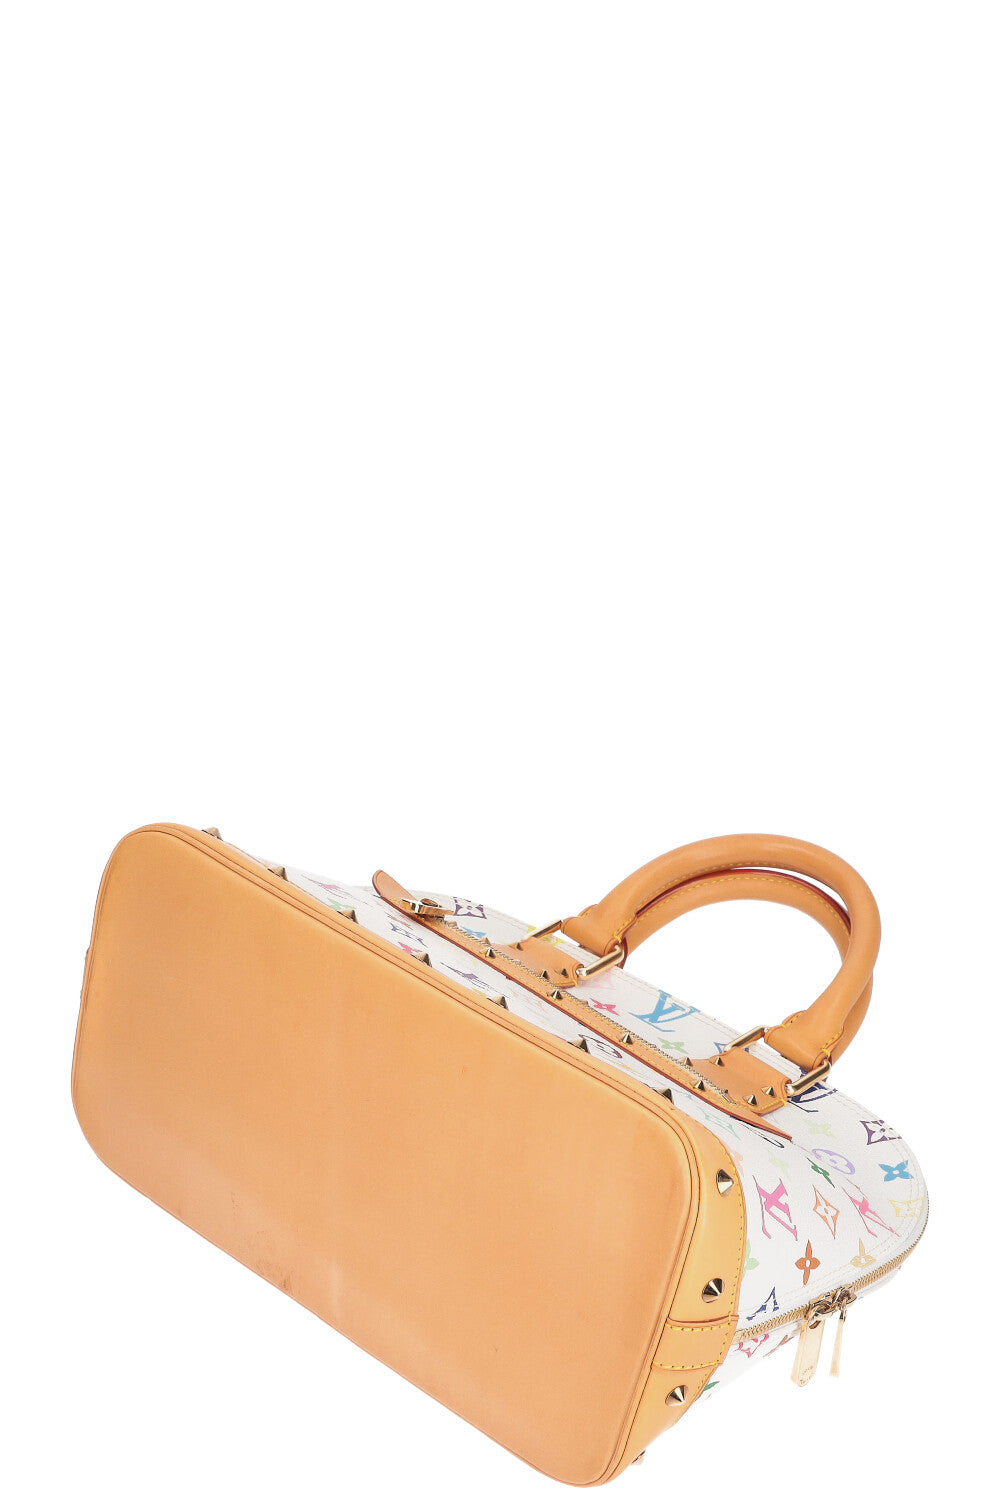 Louis Vuitton Neo Alma PM Bag – ZAK BAGS ©️